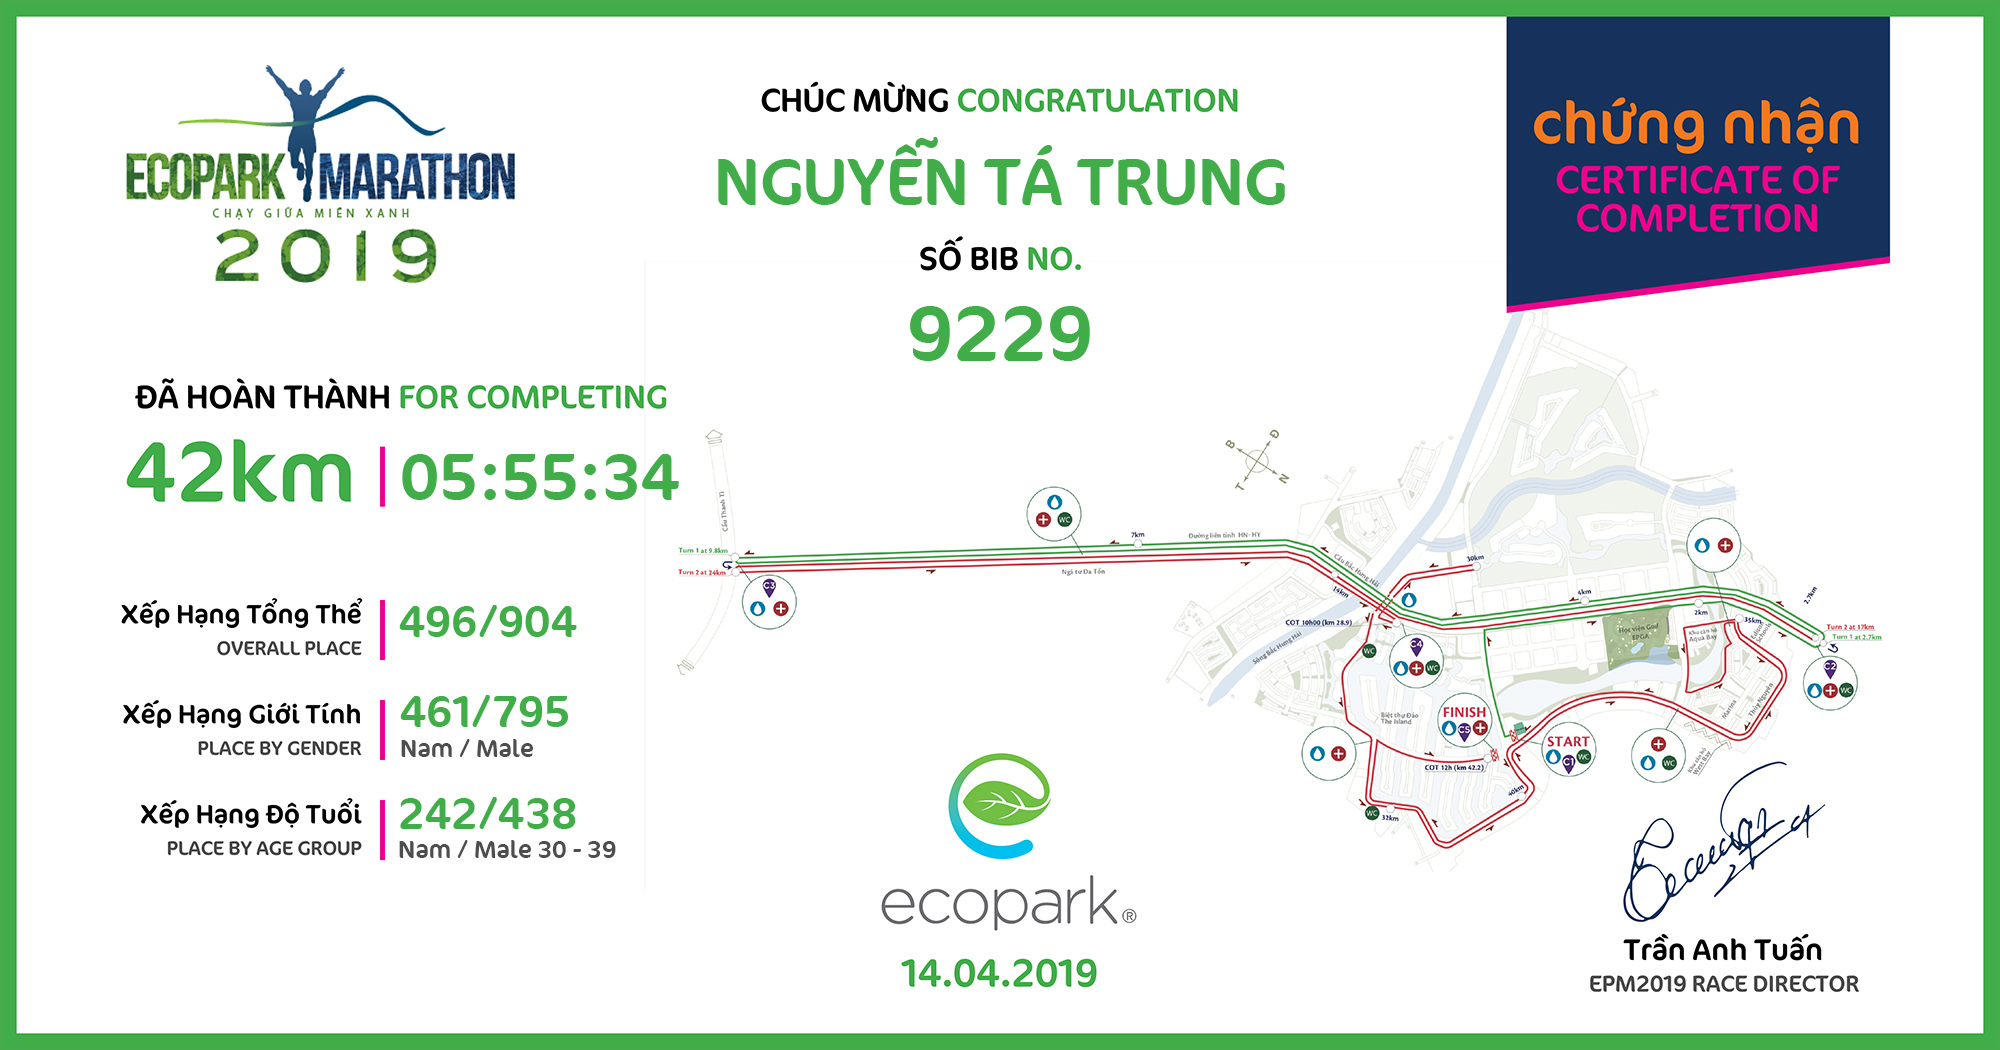 9229 - Nguyễn Tá Trung